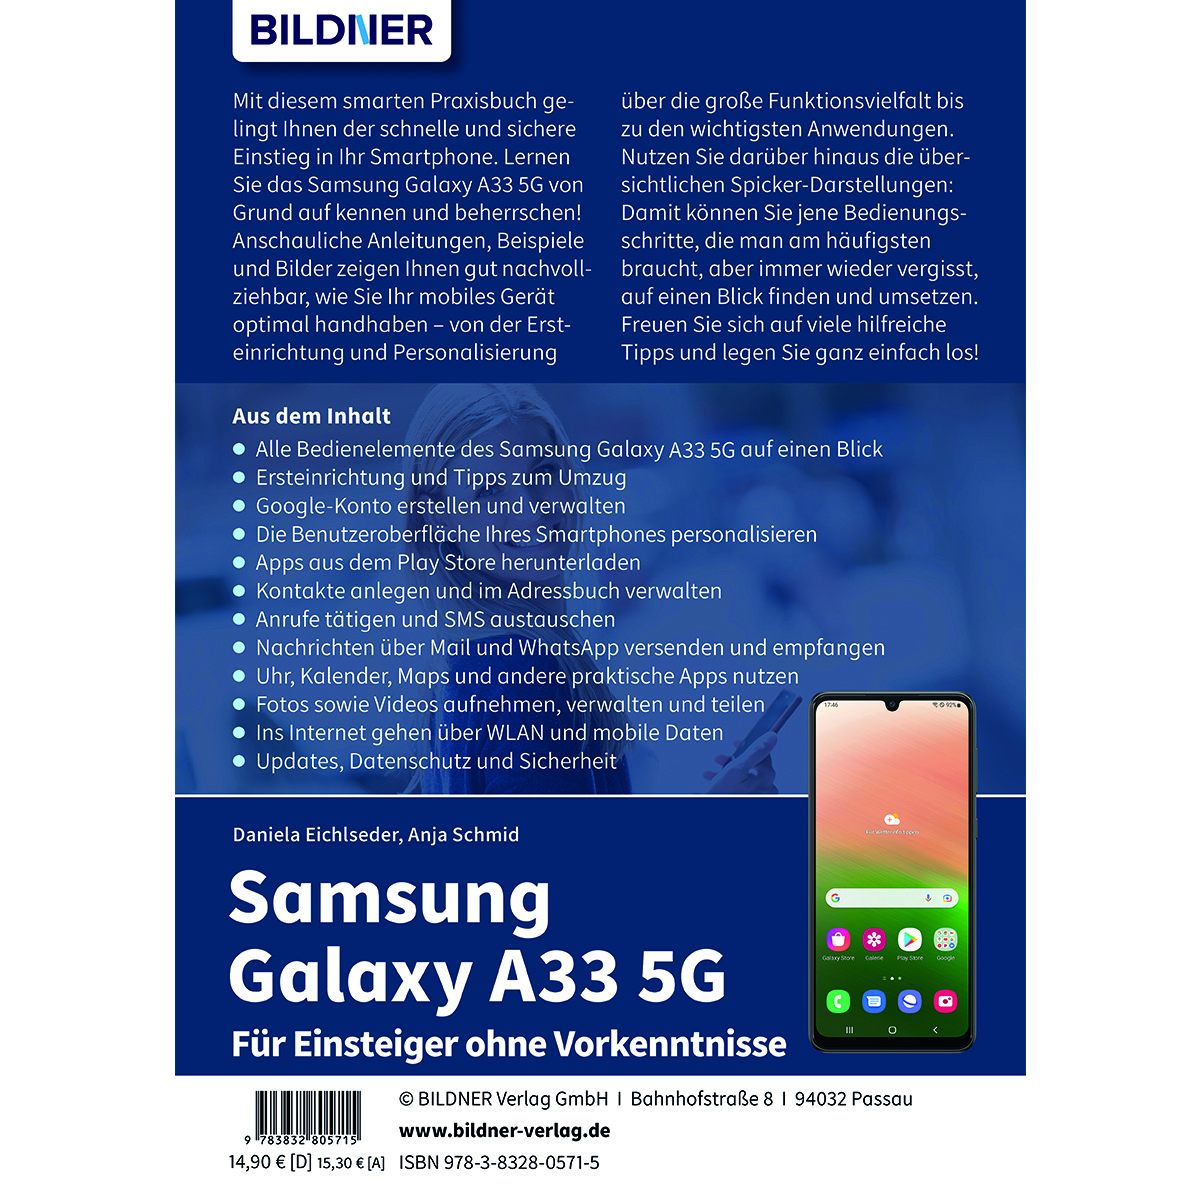 Vorkenntnisse ohne Galaxy - Einsteiger Für A33 5G Samsung